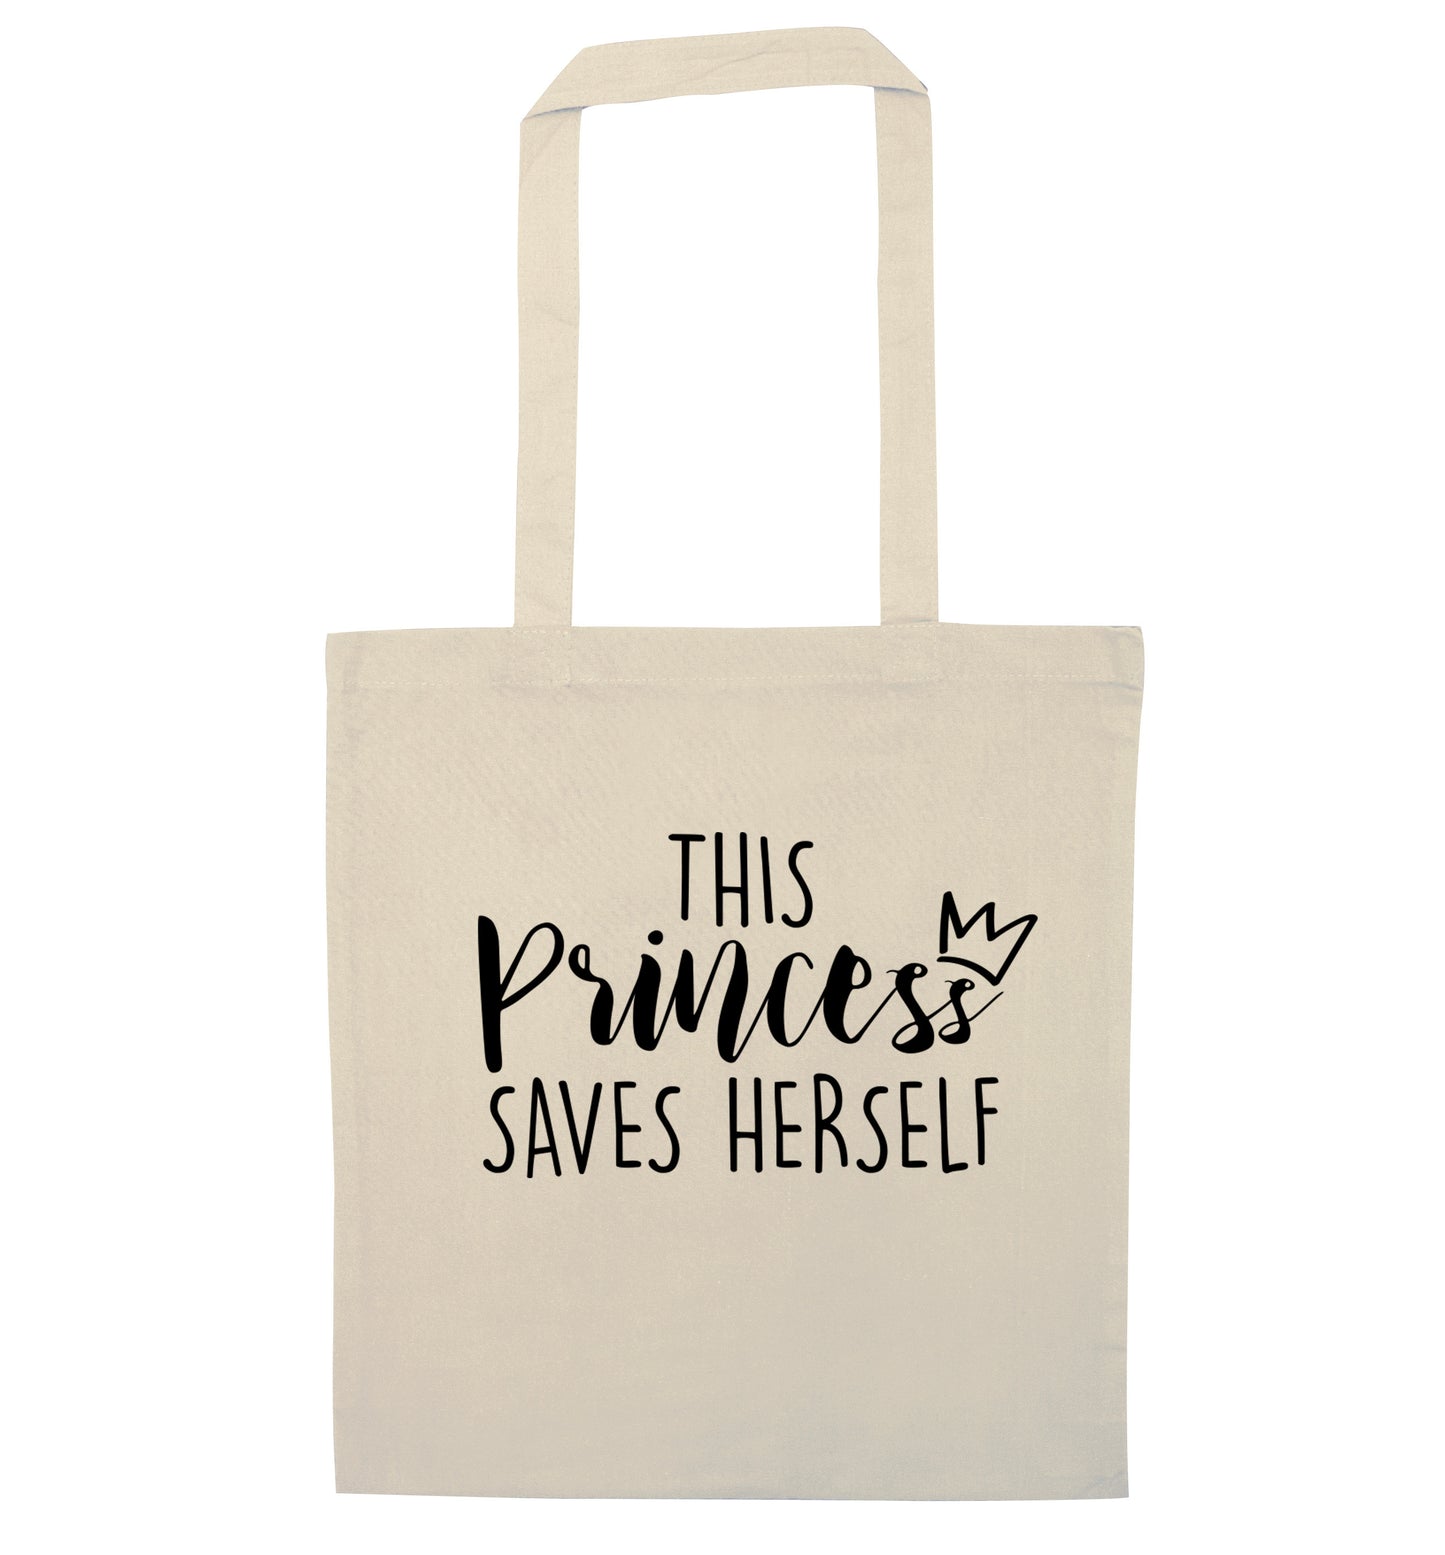 This princess saves herself natural tote bag